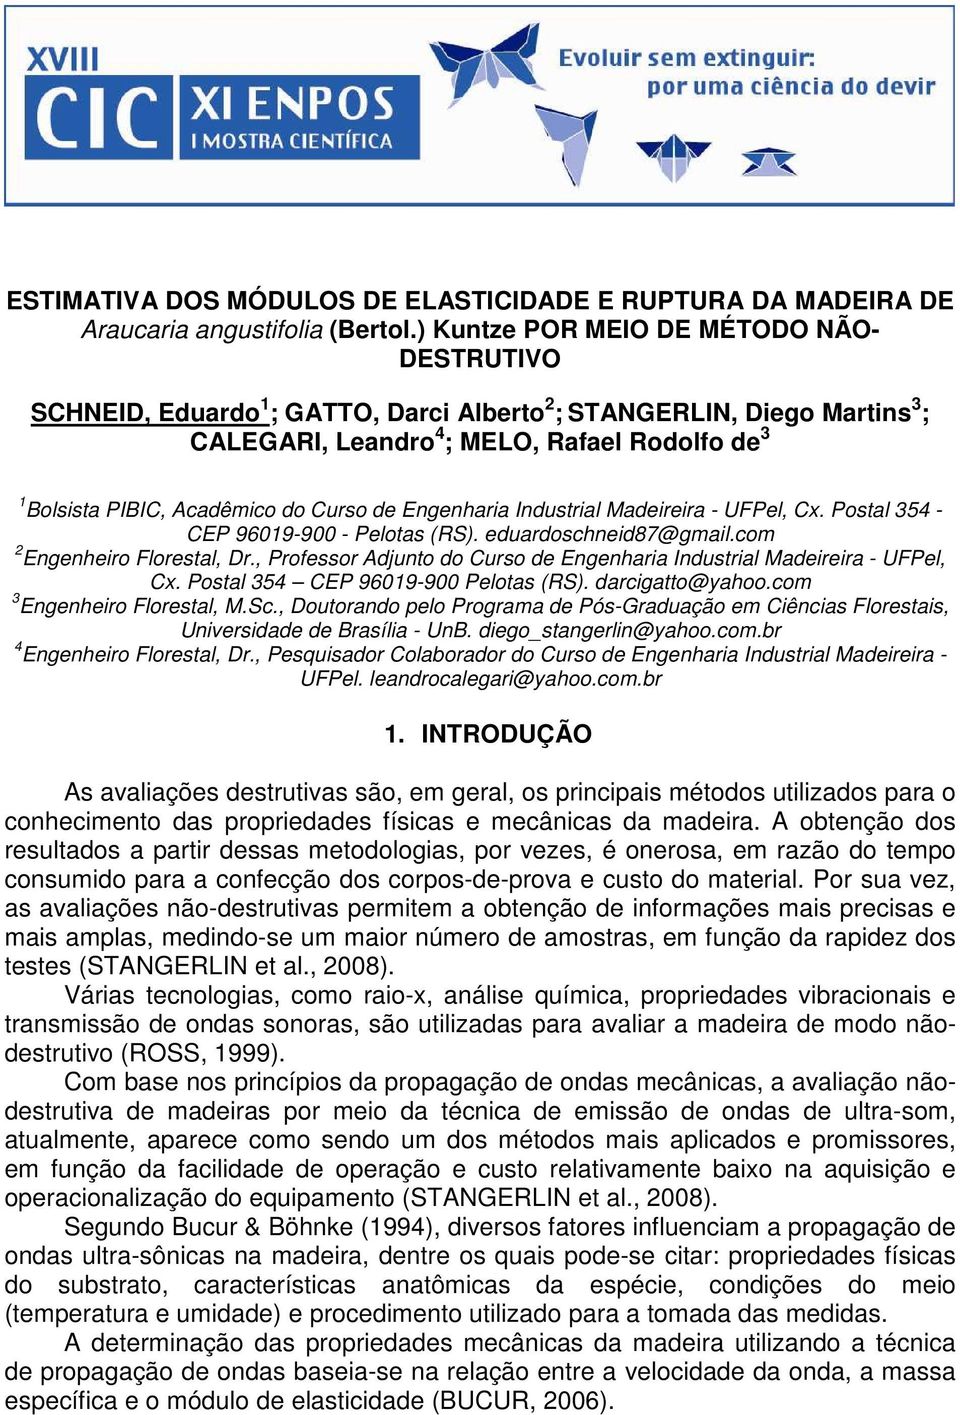 Curso de Engenharia Industrial Madeireira - UFPel, Cx. Postal 354 - CEP 96019-900 - Pelotas (RS). eduardoschneid87@gmail.com 2 Engenheiro Florestal, Dr.